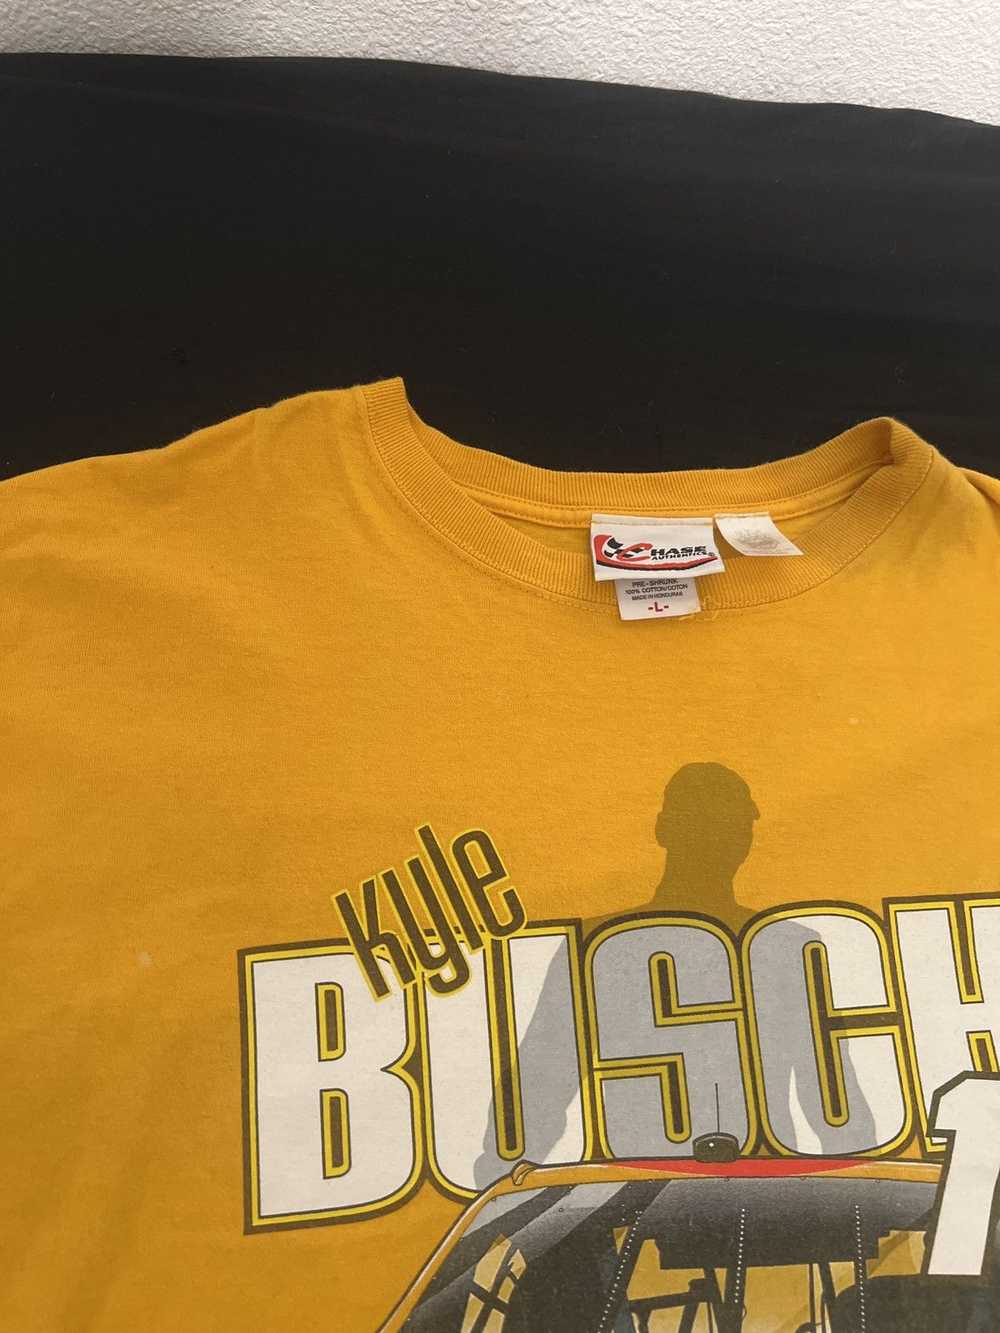 Vintage Kyle Busch/m&ms T-Shirt - image 5